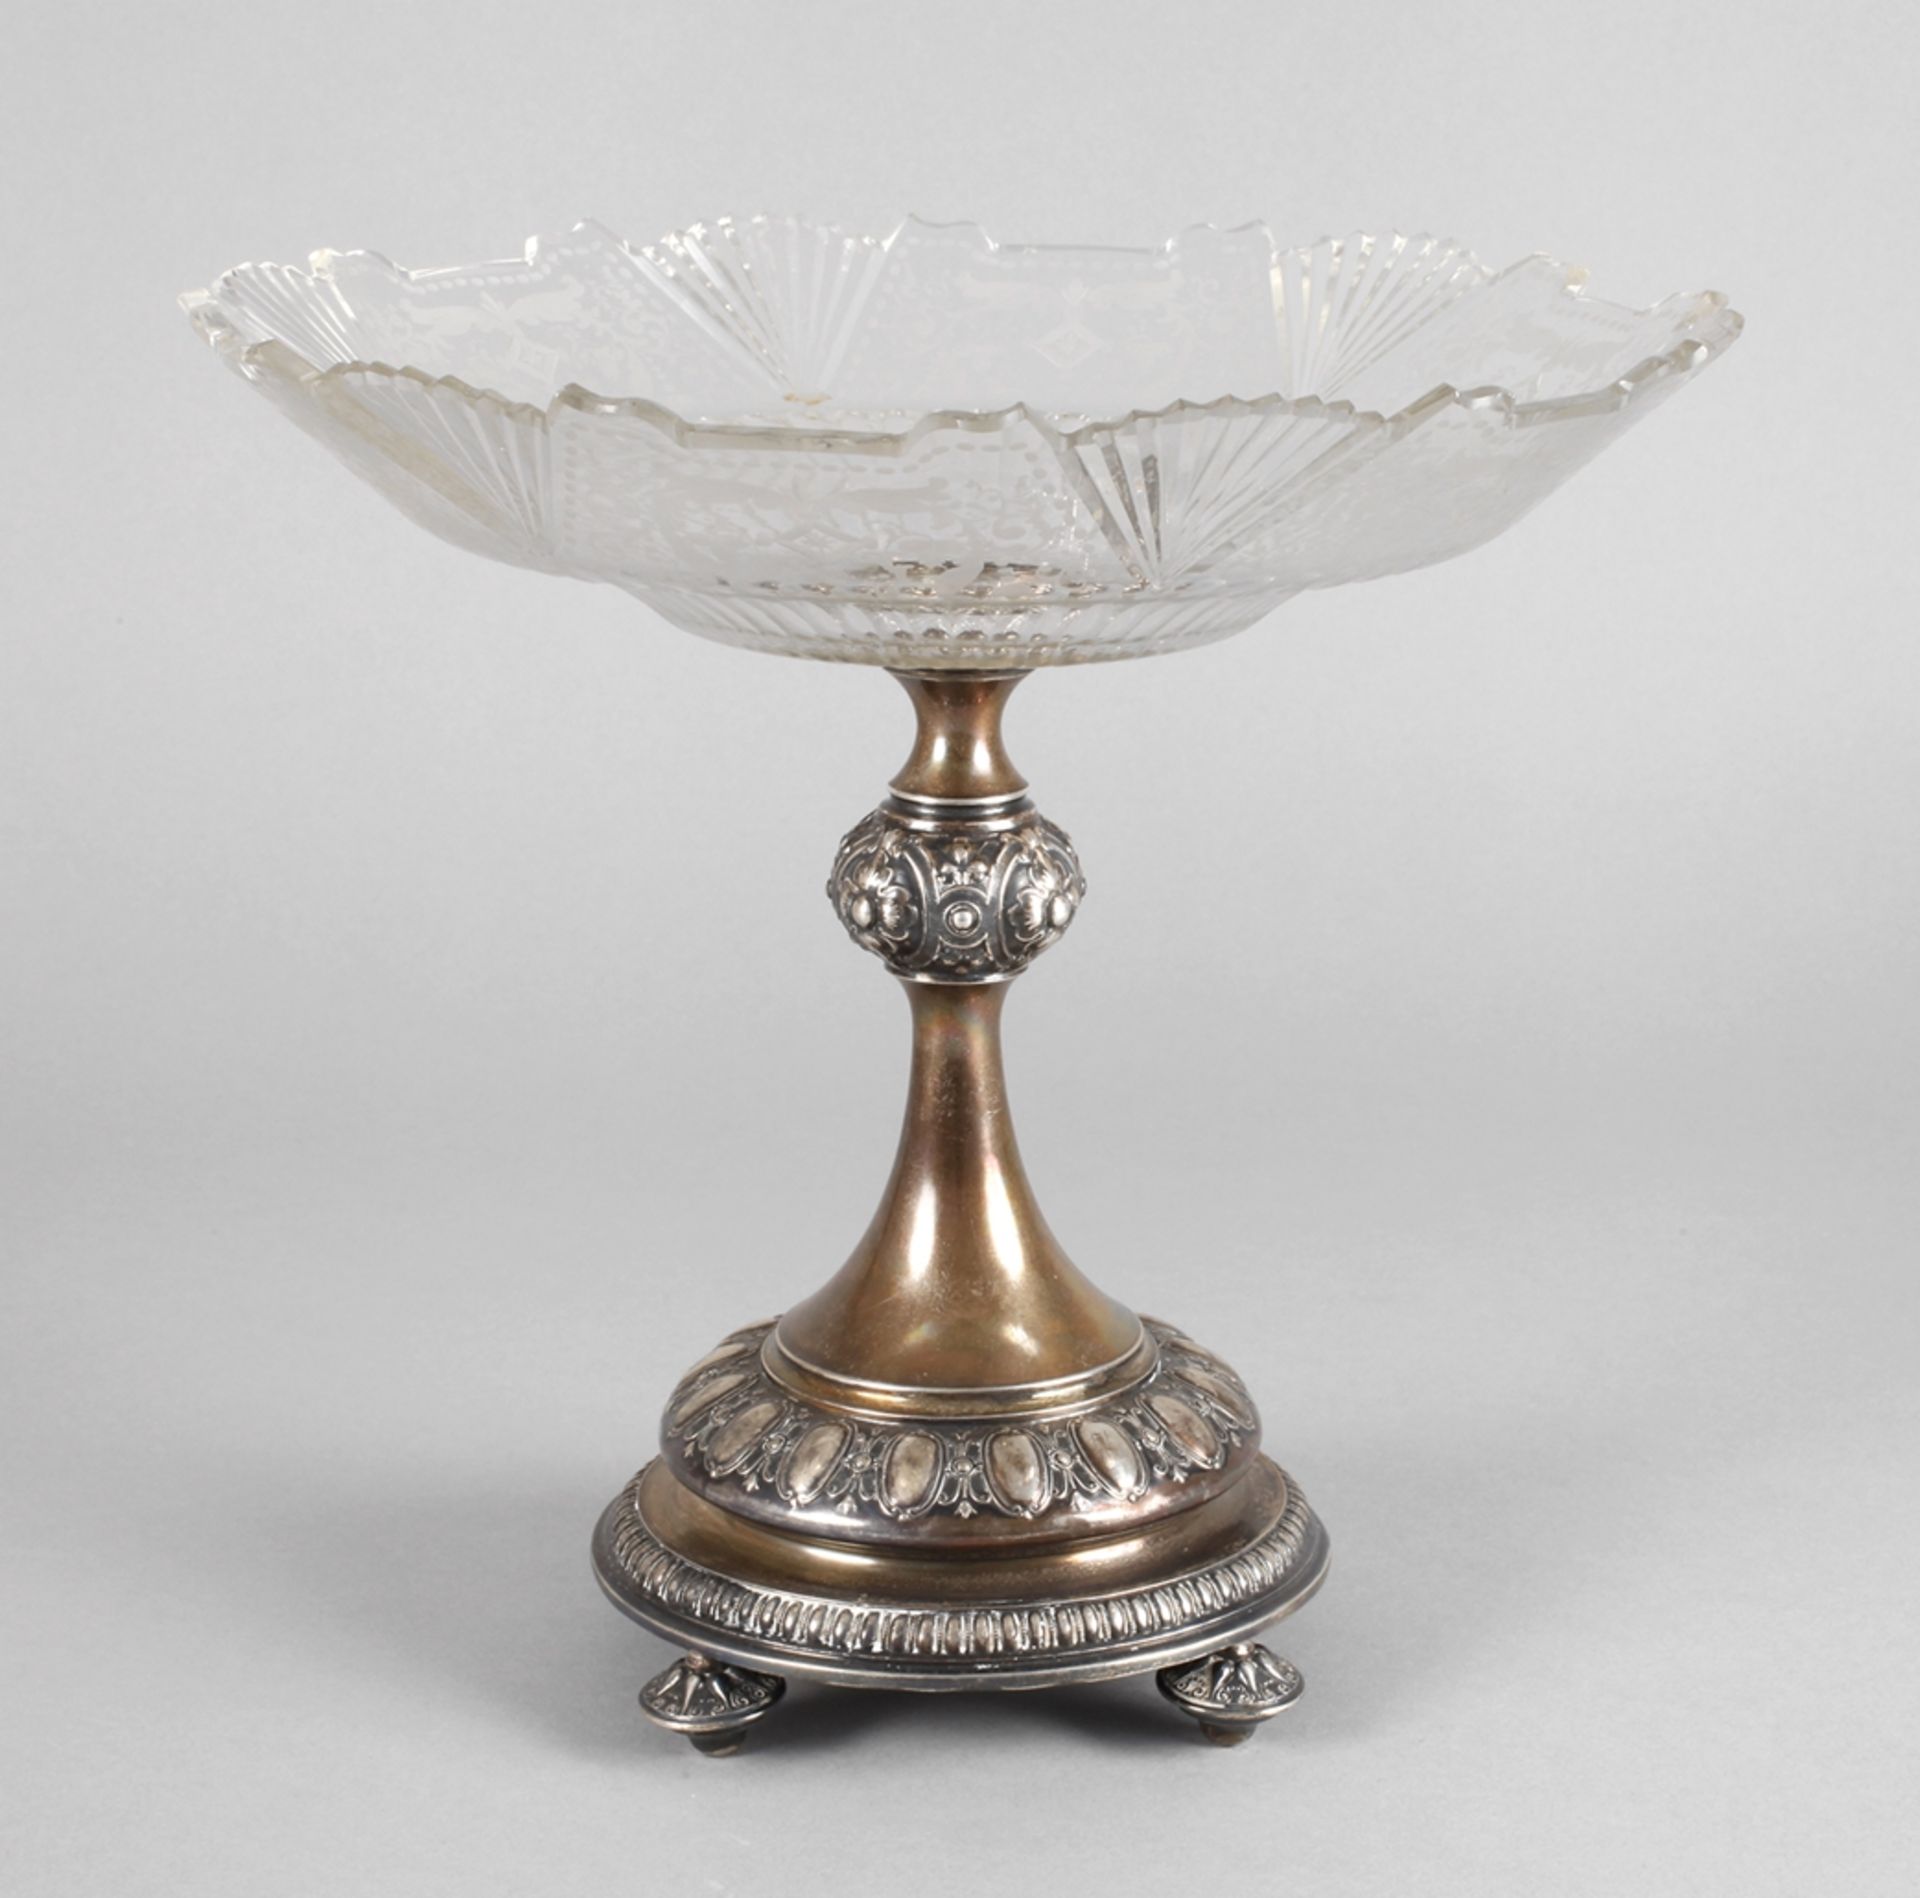 Tazza mit Silberfußum 1880, ungepunzt, Silber geprüft, reich verziert mit Ornamentbändern, der